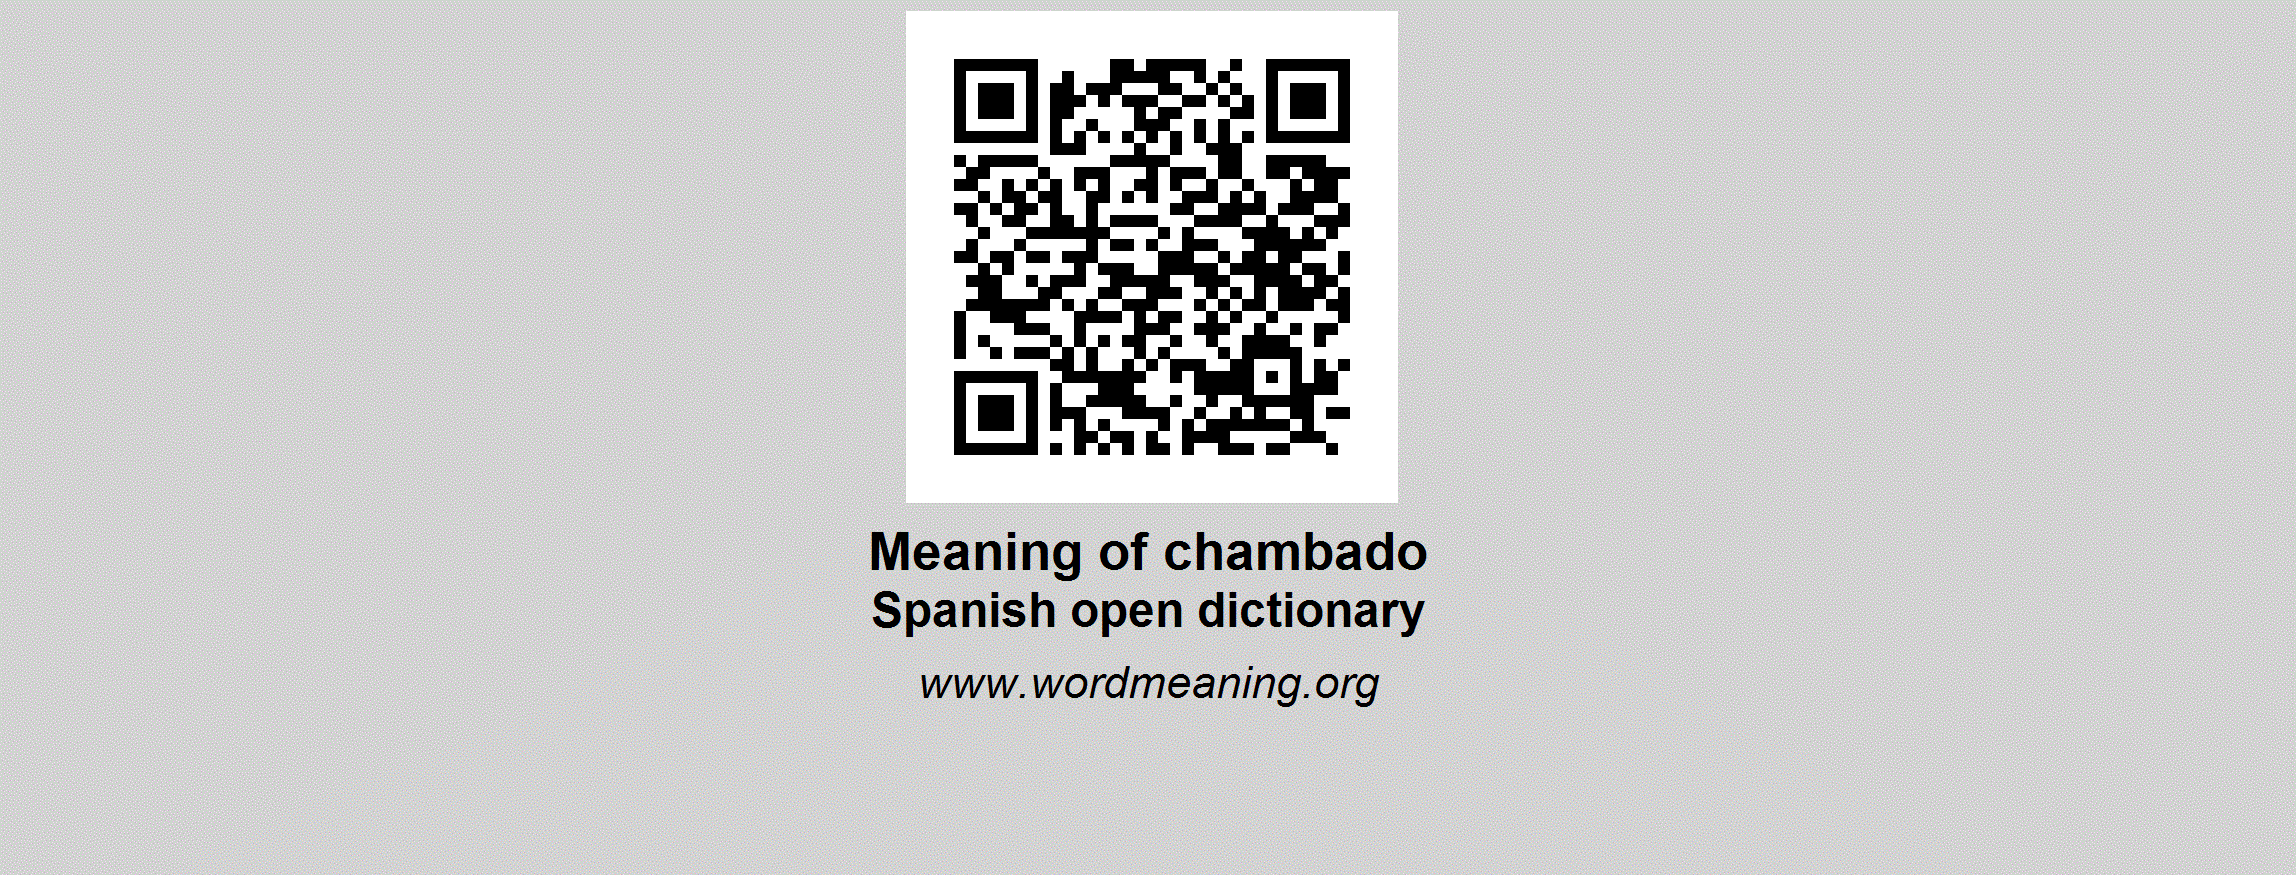 chamba meaning